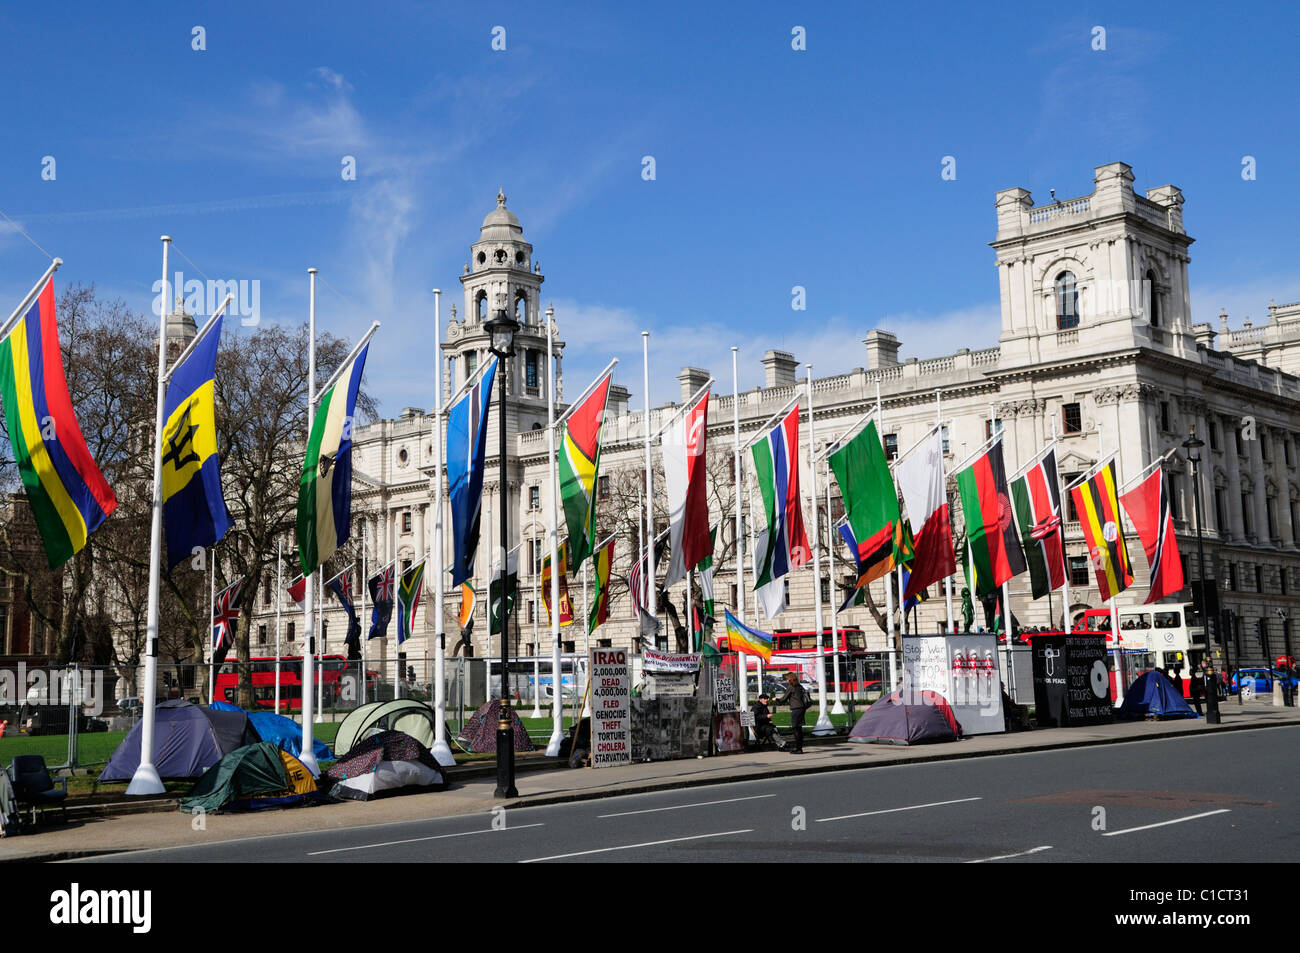 La plaza del parlamento con manifestantes anti guerra y banderas, Westminster, Londres, Inglaterra, Reino Unido. Foto de stock